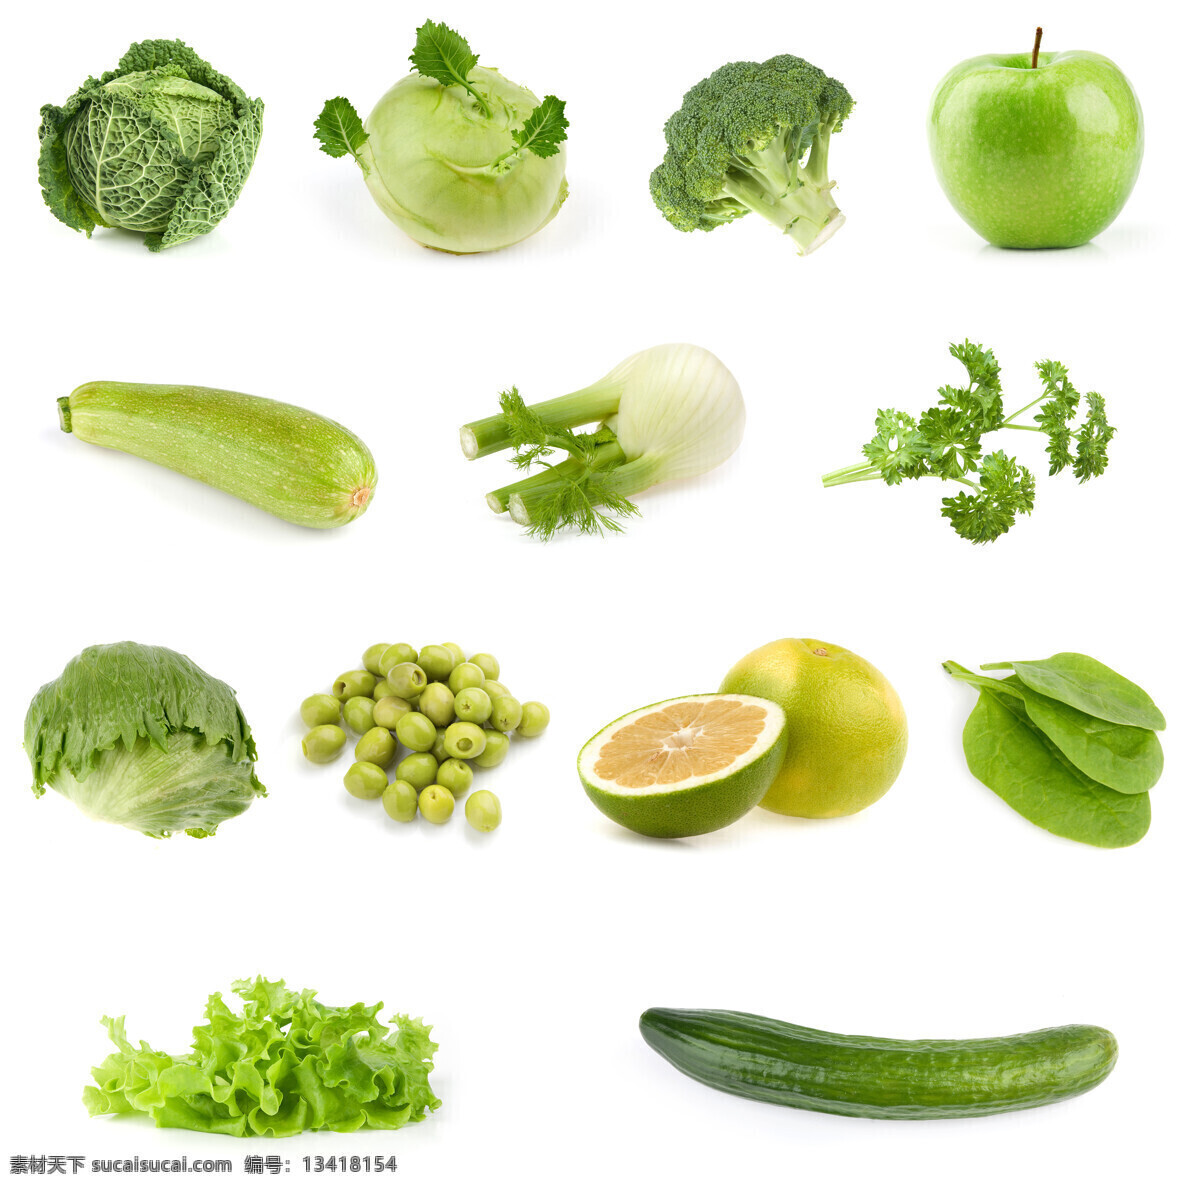 绿色 蔬菜 包菜 黄瓜 绿色蔬菜 青菜 生菜 生物世界 西兰花 菜叶 新鲜蔬菜